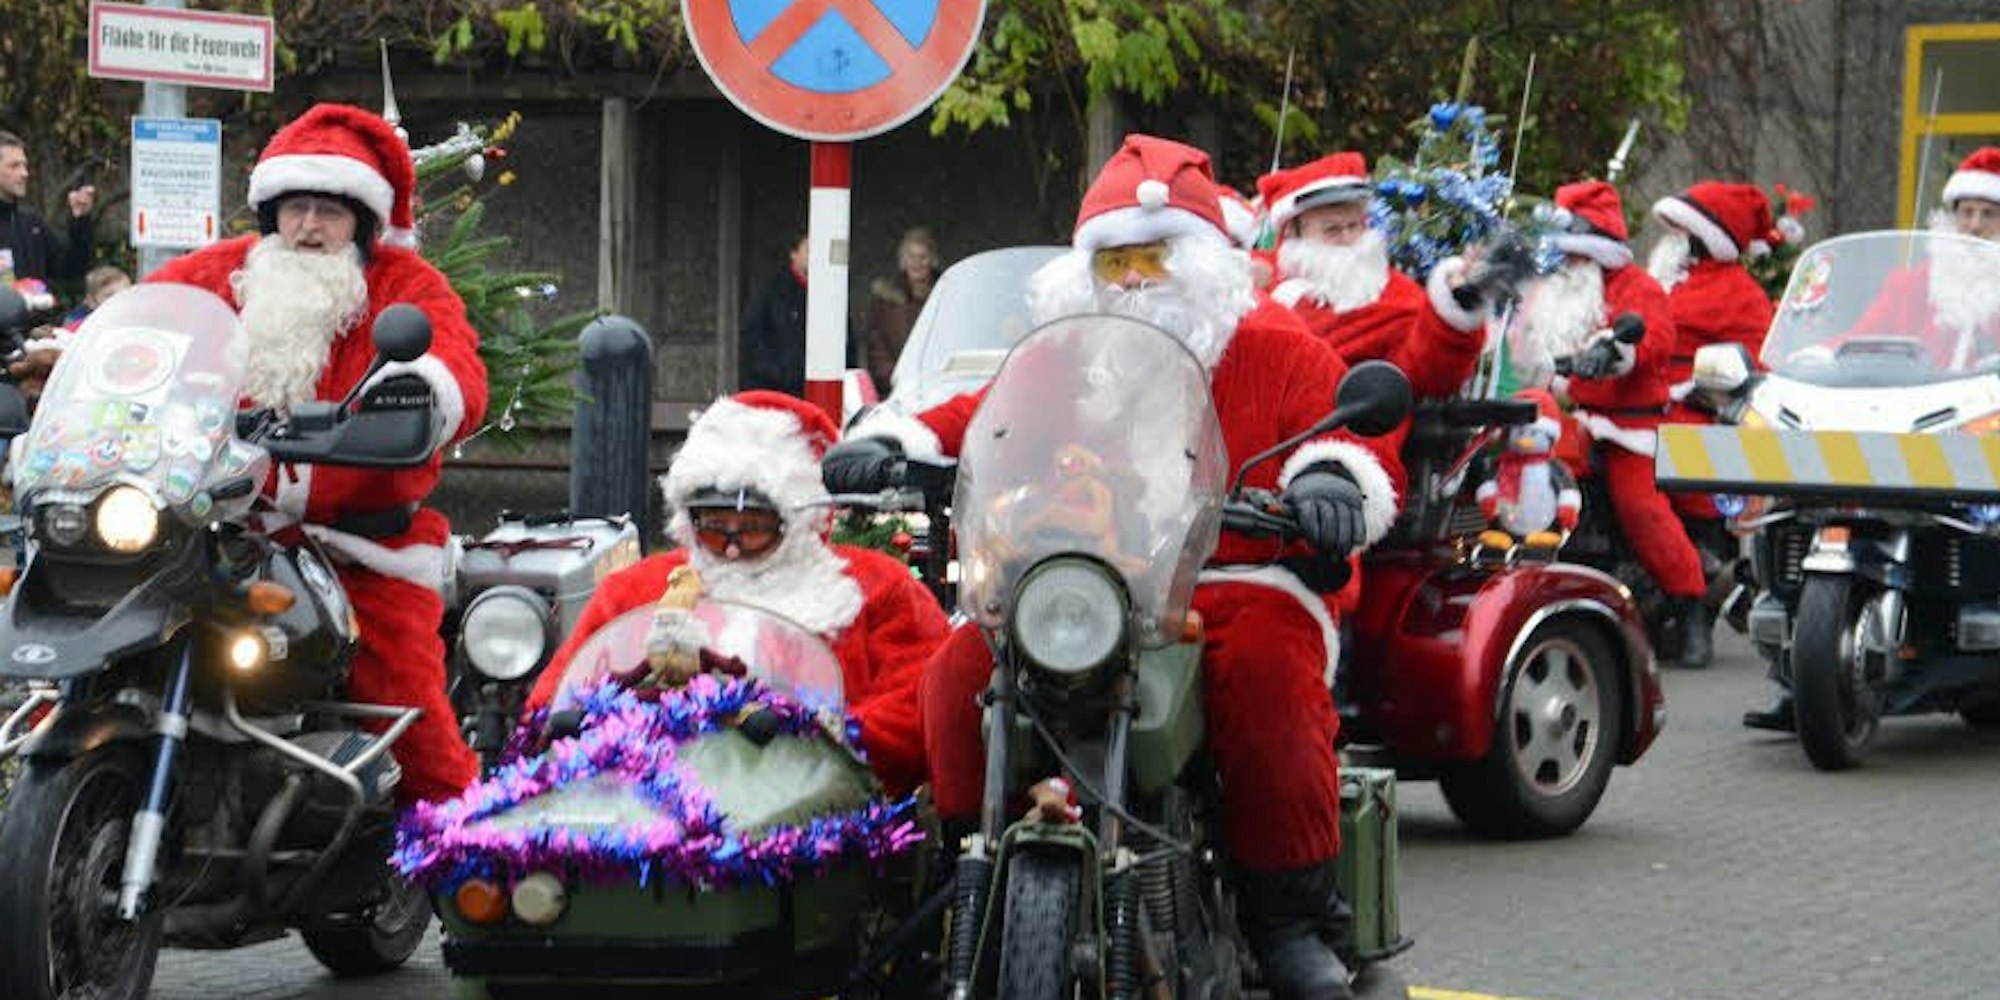 Die Weihnachtsmänner auf Motorrädern brachten den kranken Kinder in der Kinderklinik Geschenke.